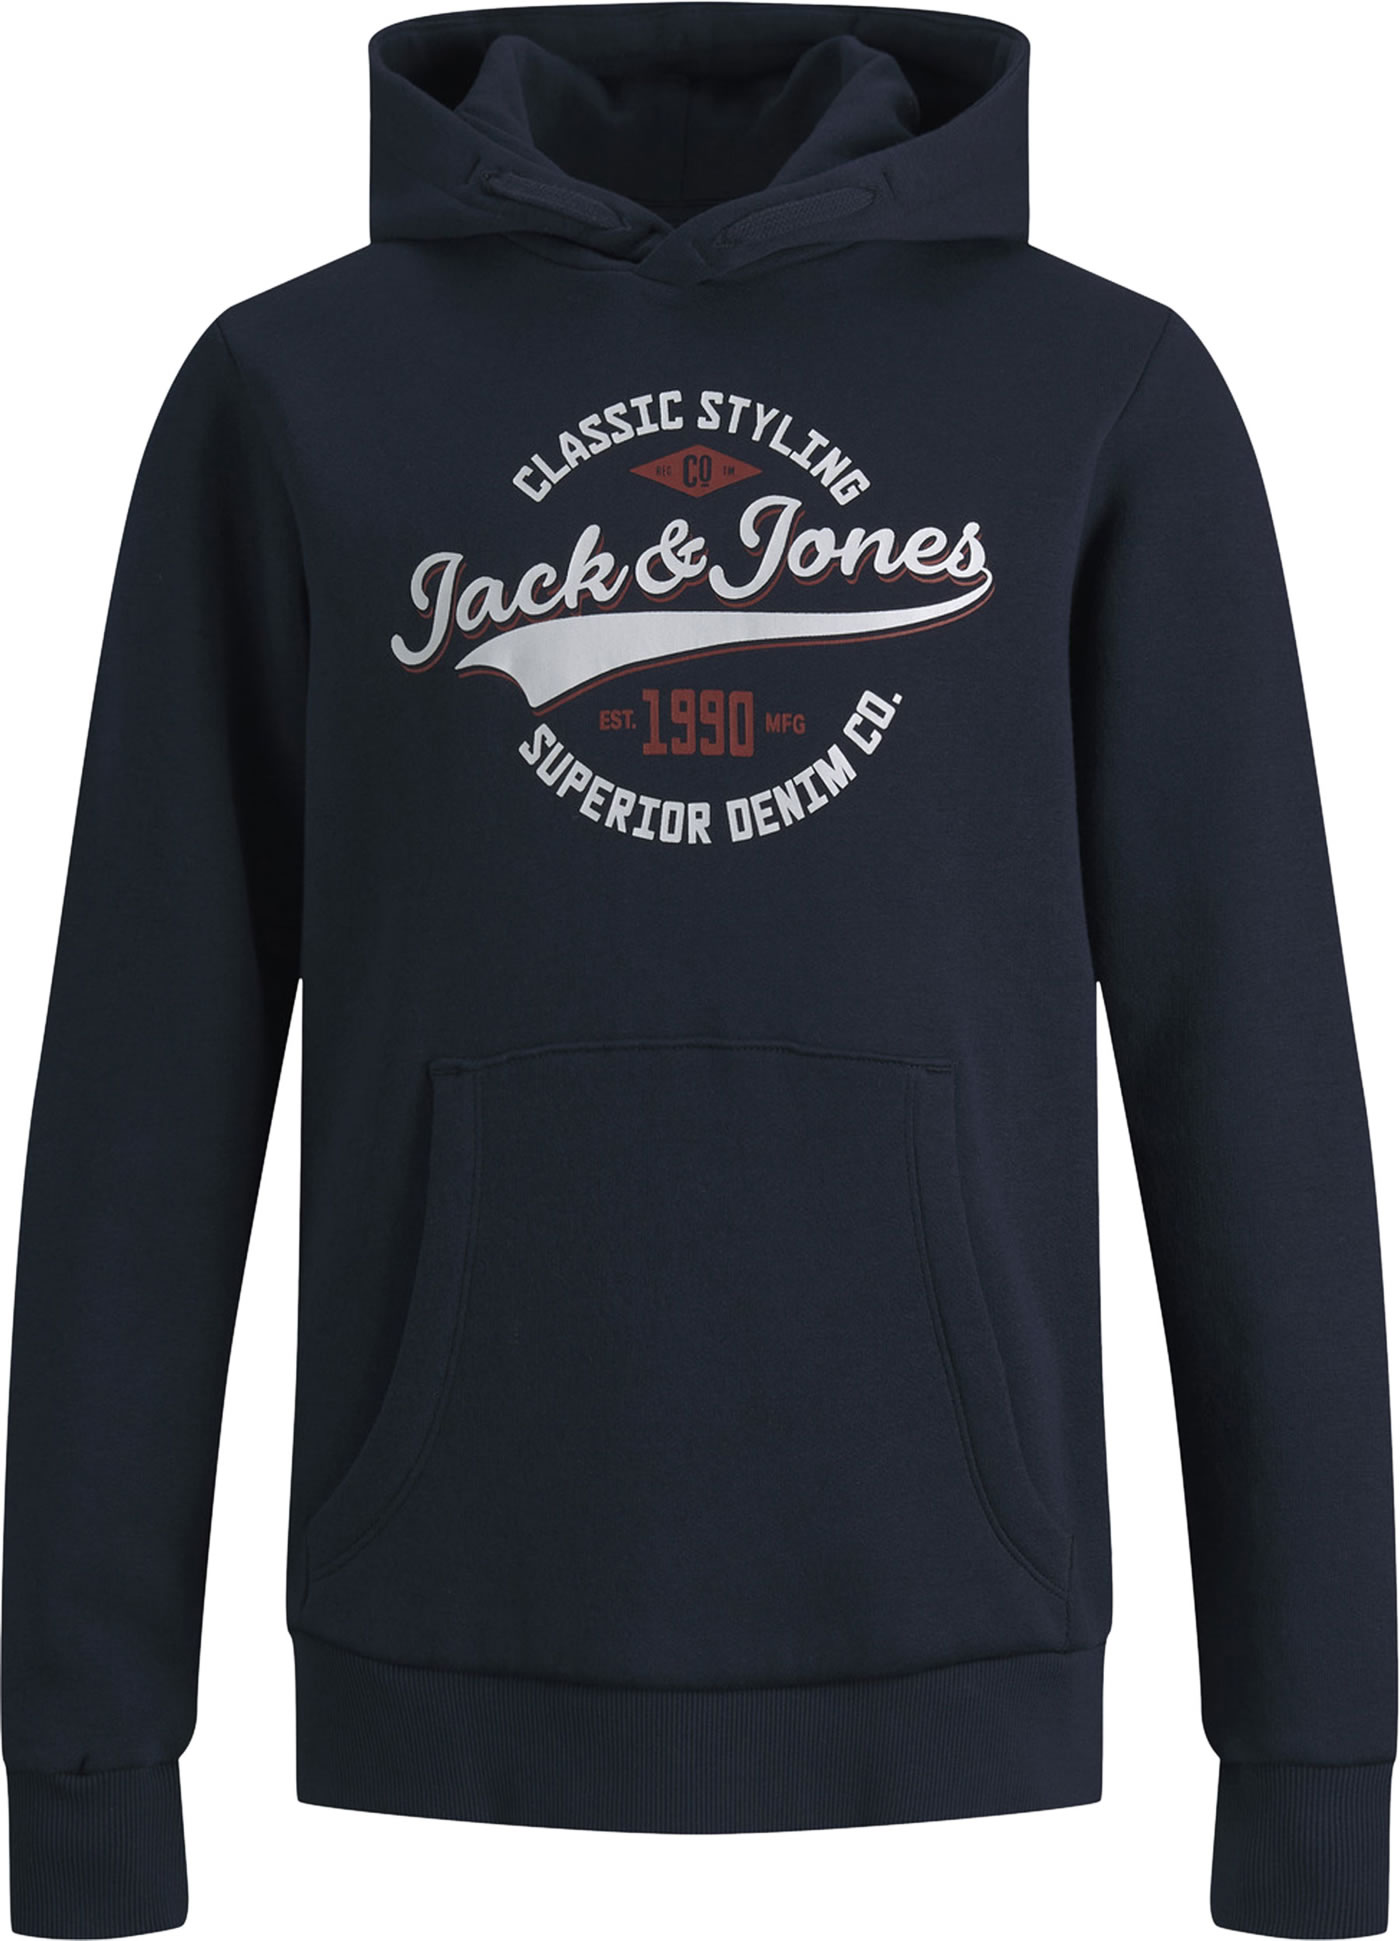 Jack & Jones sweatshirt KINDER Pullovers & Sweatshirts Basisch Grau 164 Rabatt 56 % 